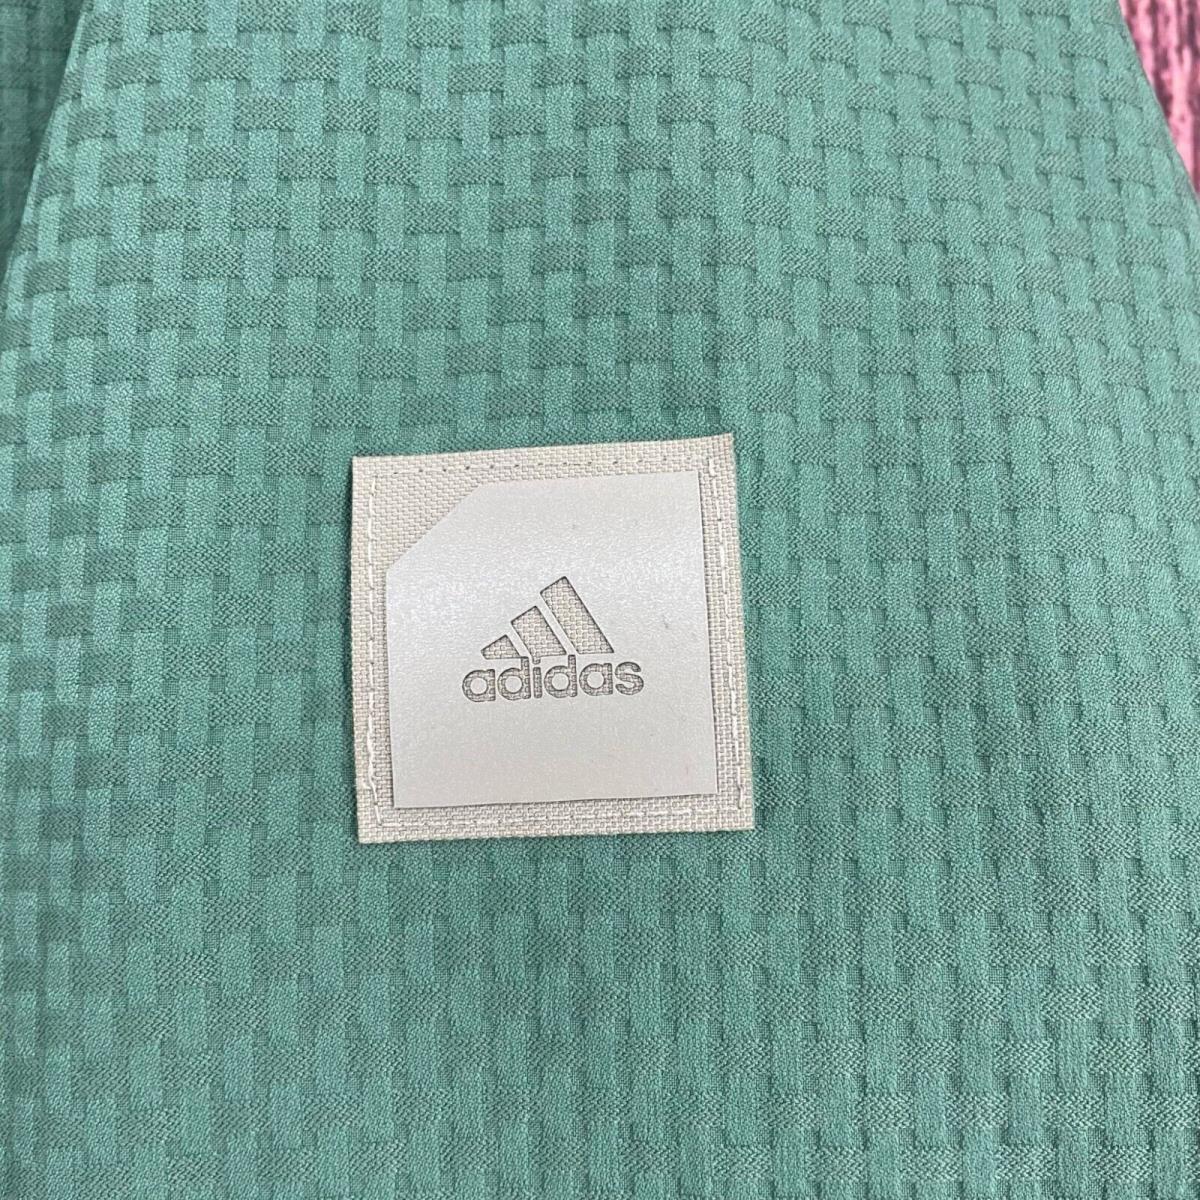 Adidas clothing  - Green 4